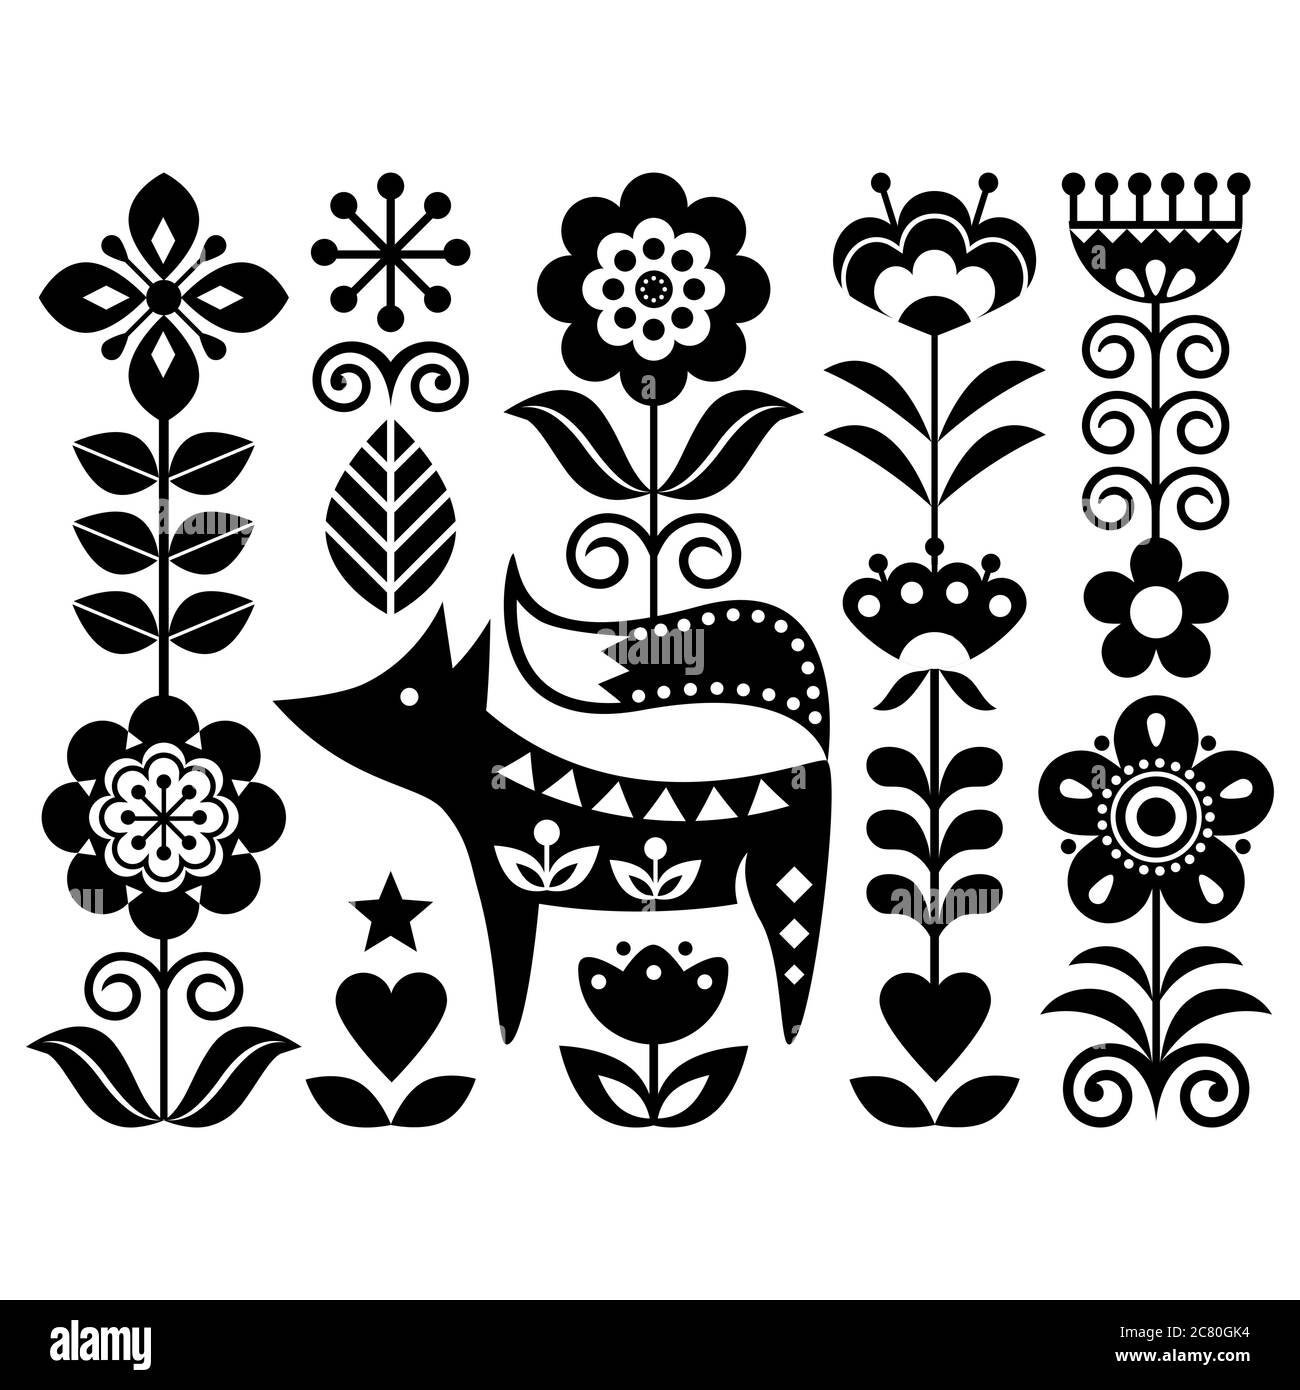 Skandinavische niedliche monochrome Folk Art Vektor-Design mit Blumen und Fuchs, Blumenmuster perfekt für Grußkarte oder Einladung von der Tradition inspiriert Stock Vektor